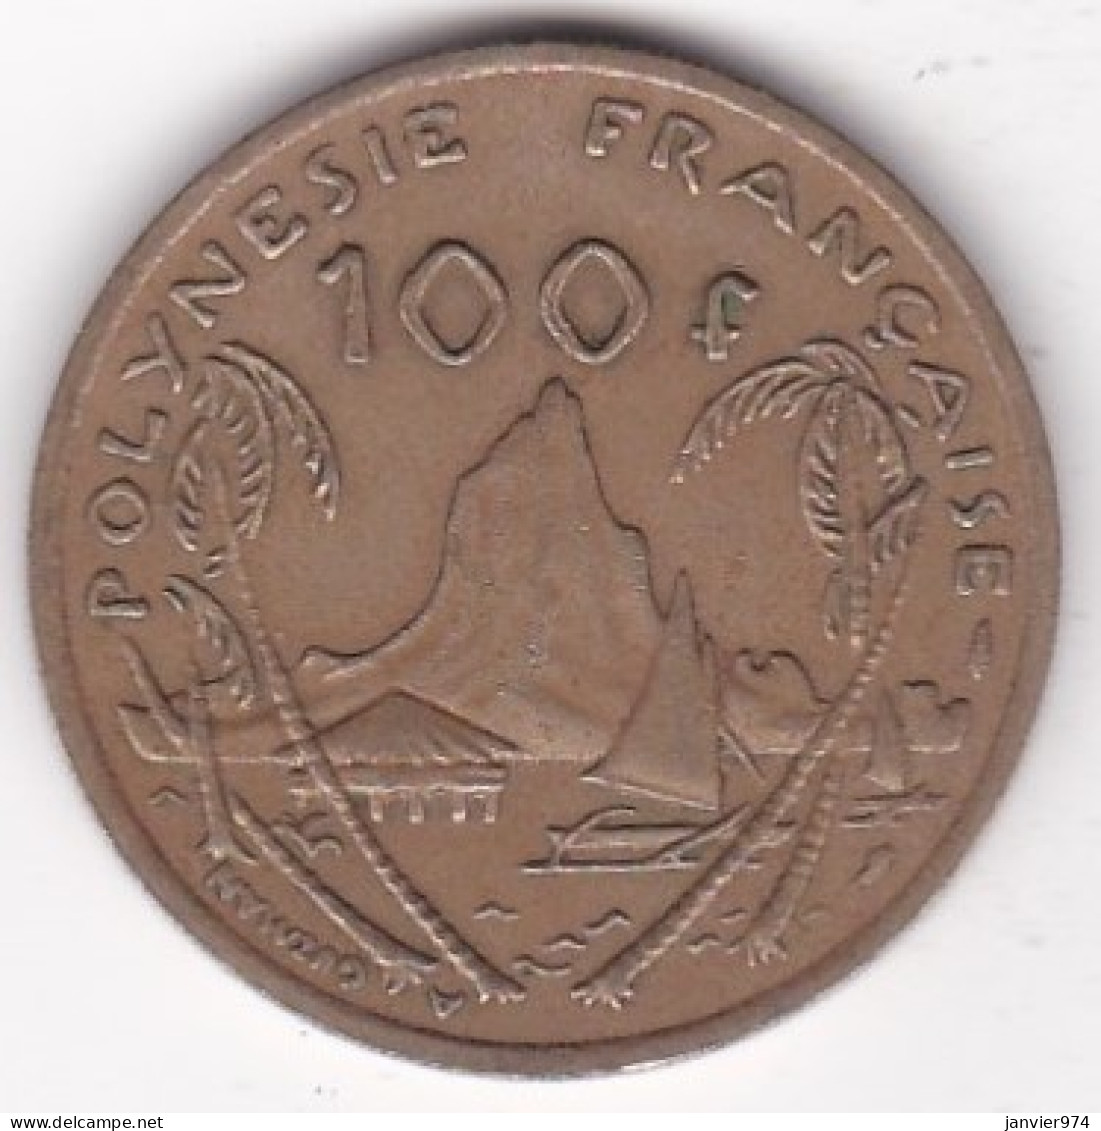 Polynésie Française . 100 Francs 1982 , Cupro-nickel-aluminium, Lec# 128 - Frans-Polynesië